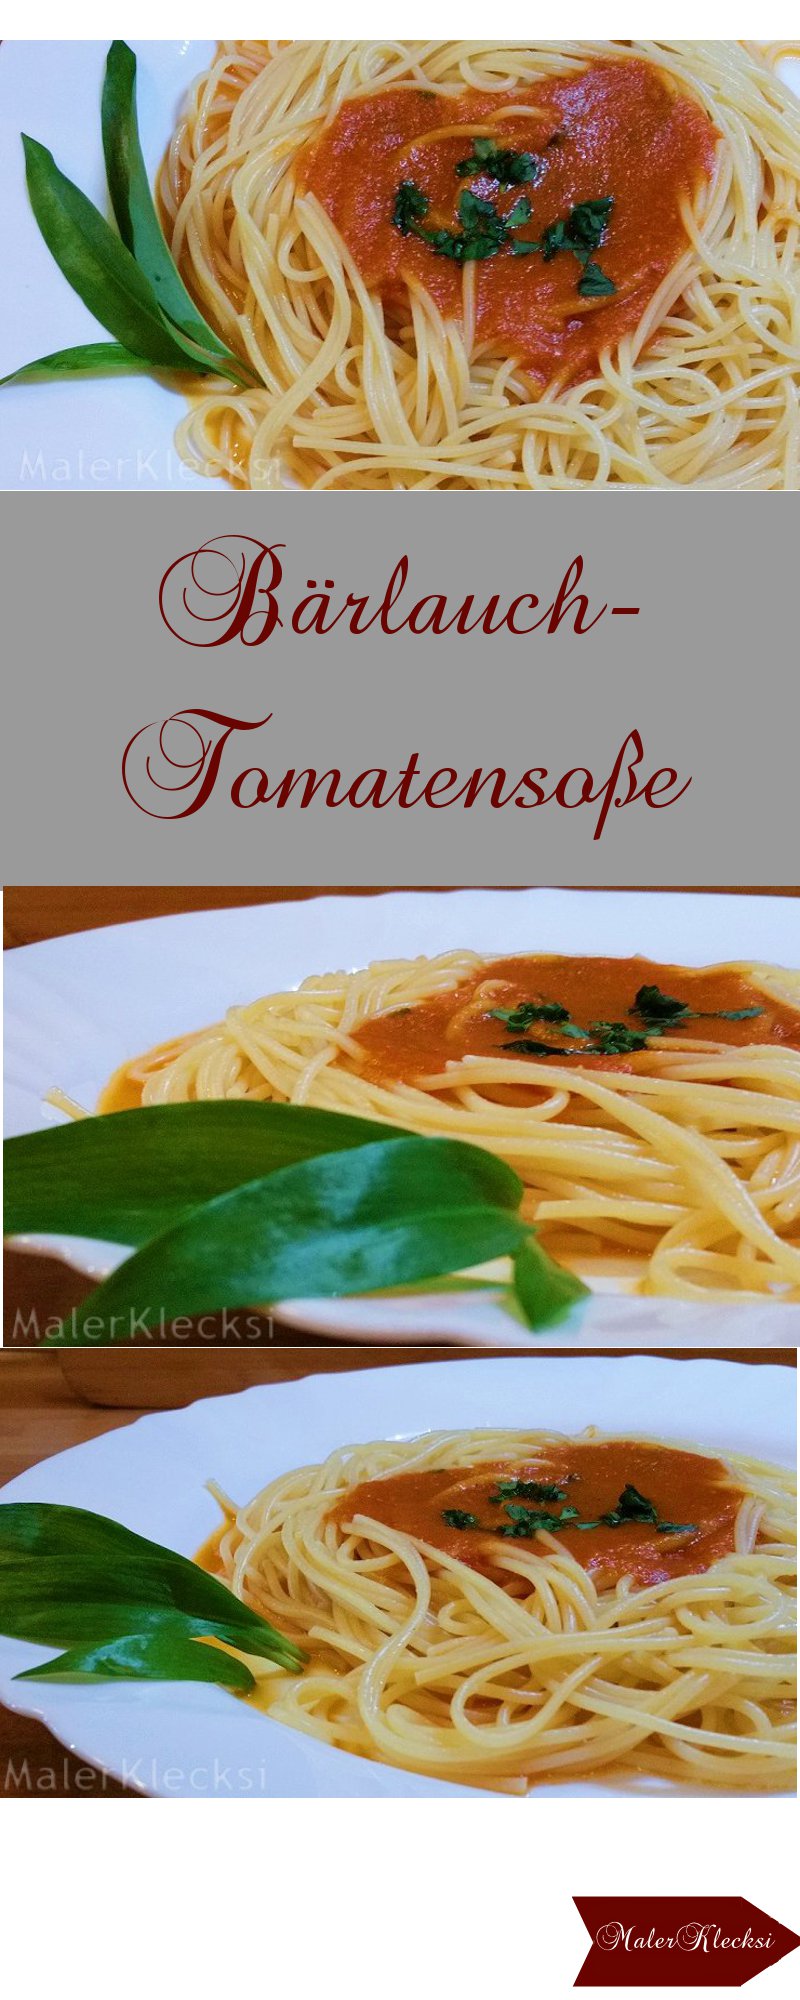 Baerlauch-Tomatensosse